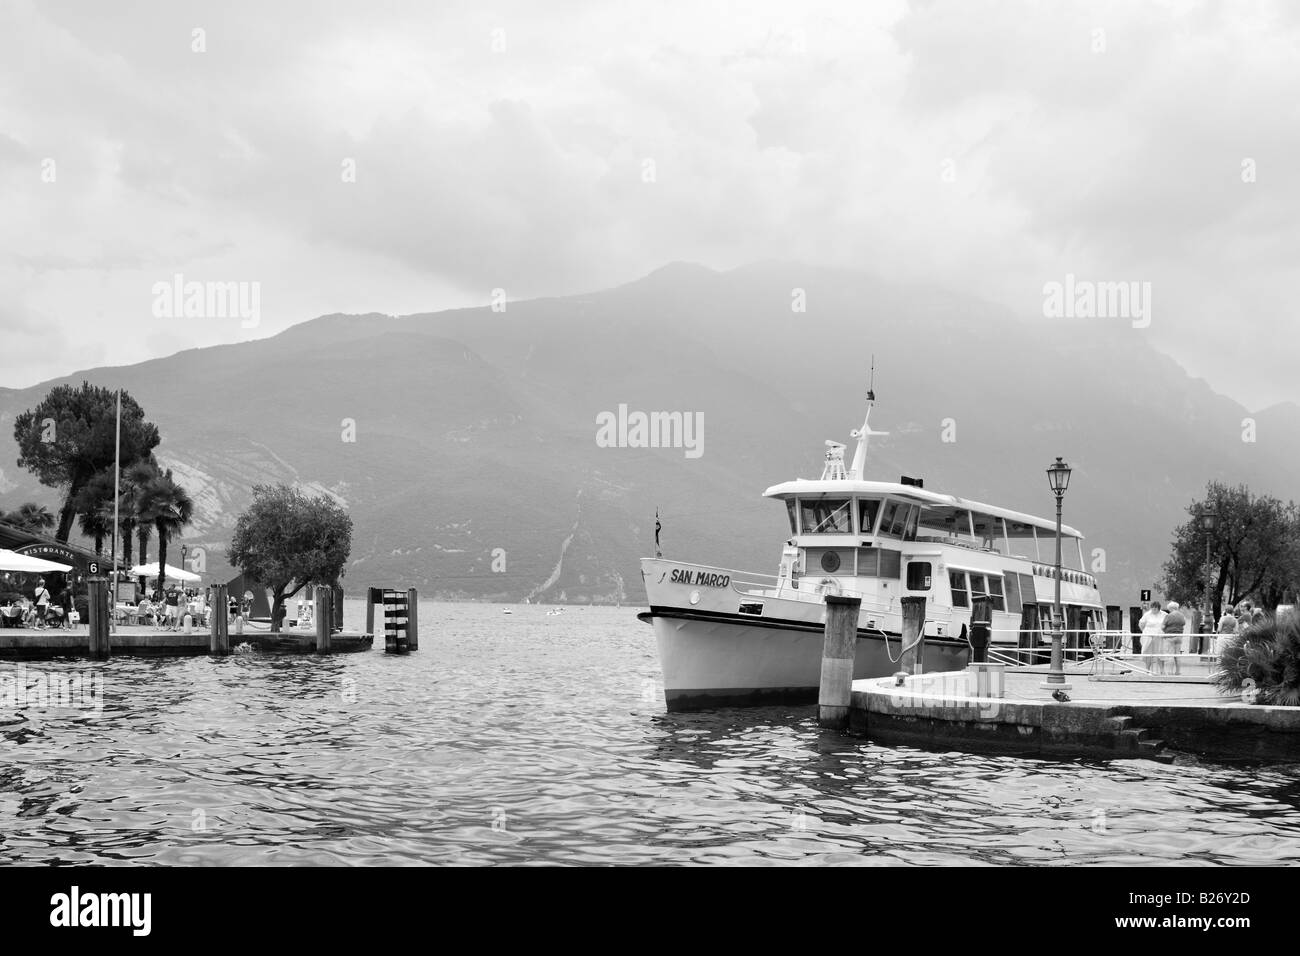 Nave traghetto ormeggiata in banchina, Riva del Garda sul Lago di Garda, Italia Foto Stock